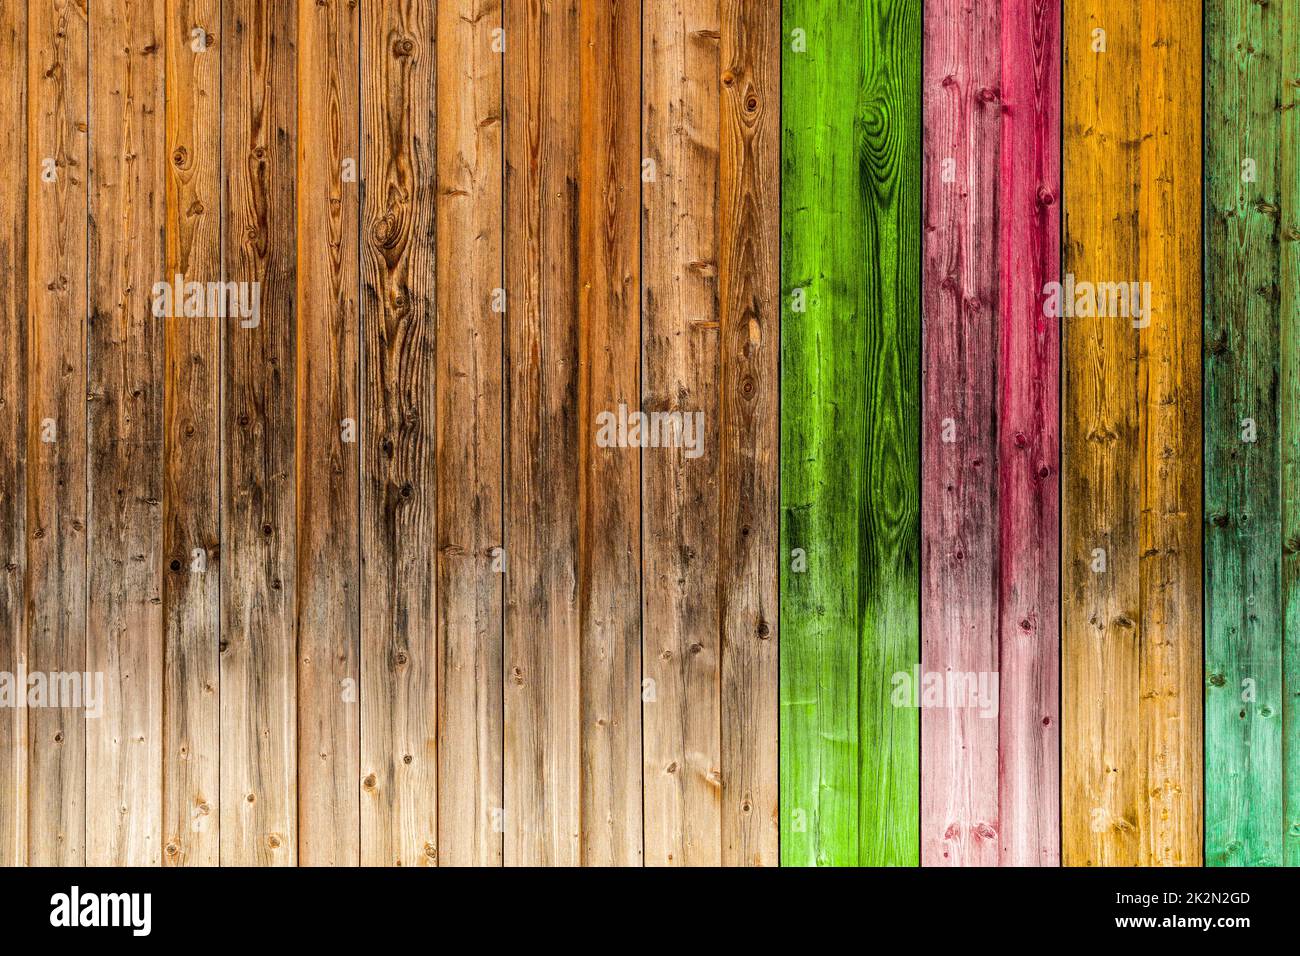 Arrière-plan en bois partiellement peint et coloré Banque D'Images